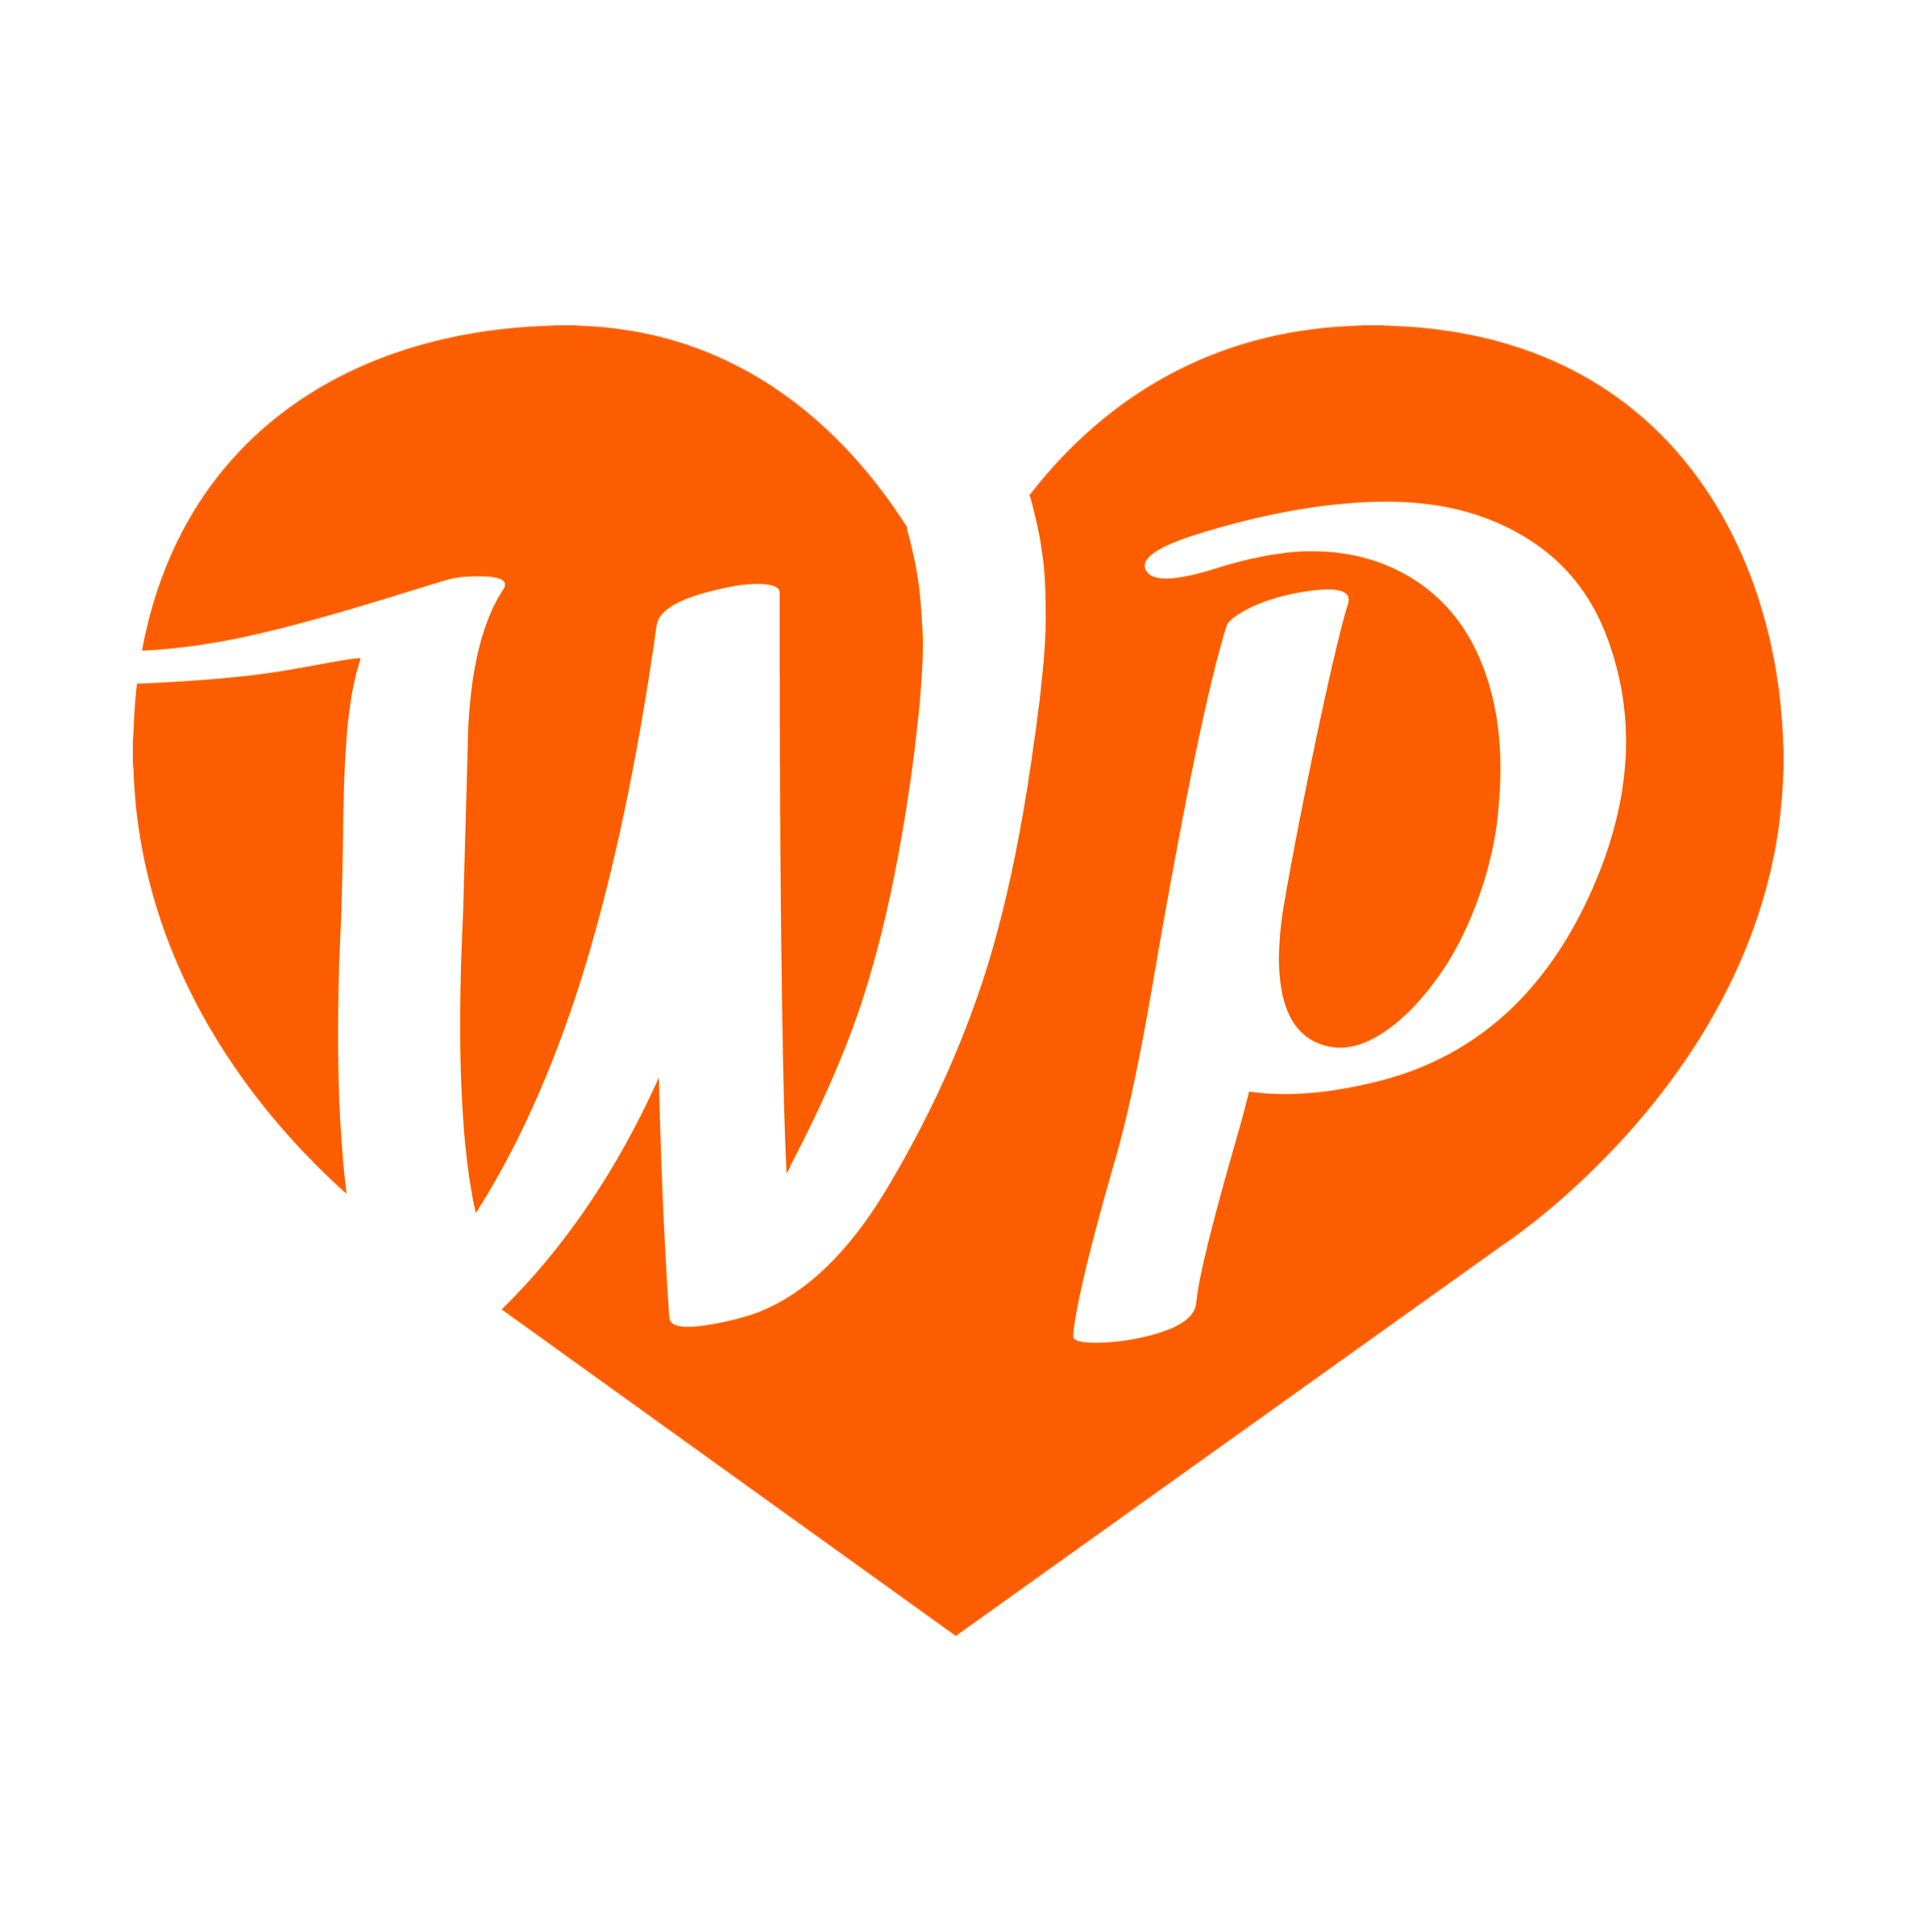 Managed WordPress Hosting in und aus Deutschland. Für Blogger, Firmen, Agenturen und Enterprise Projekte. #WordPress #wlwp Impressum: https://t.co/HkUxFMjm1o